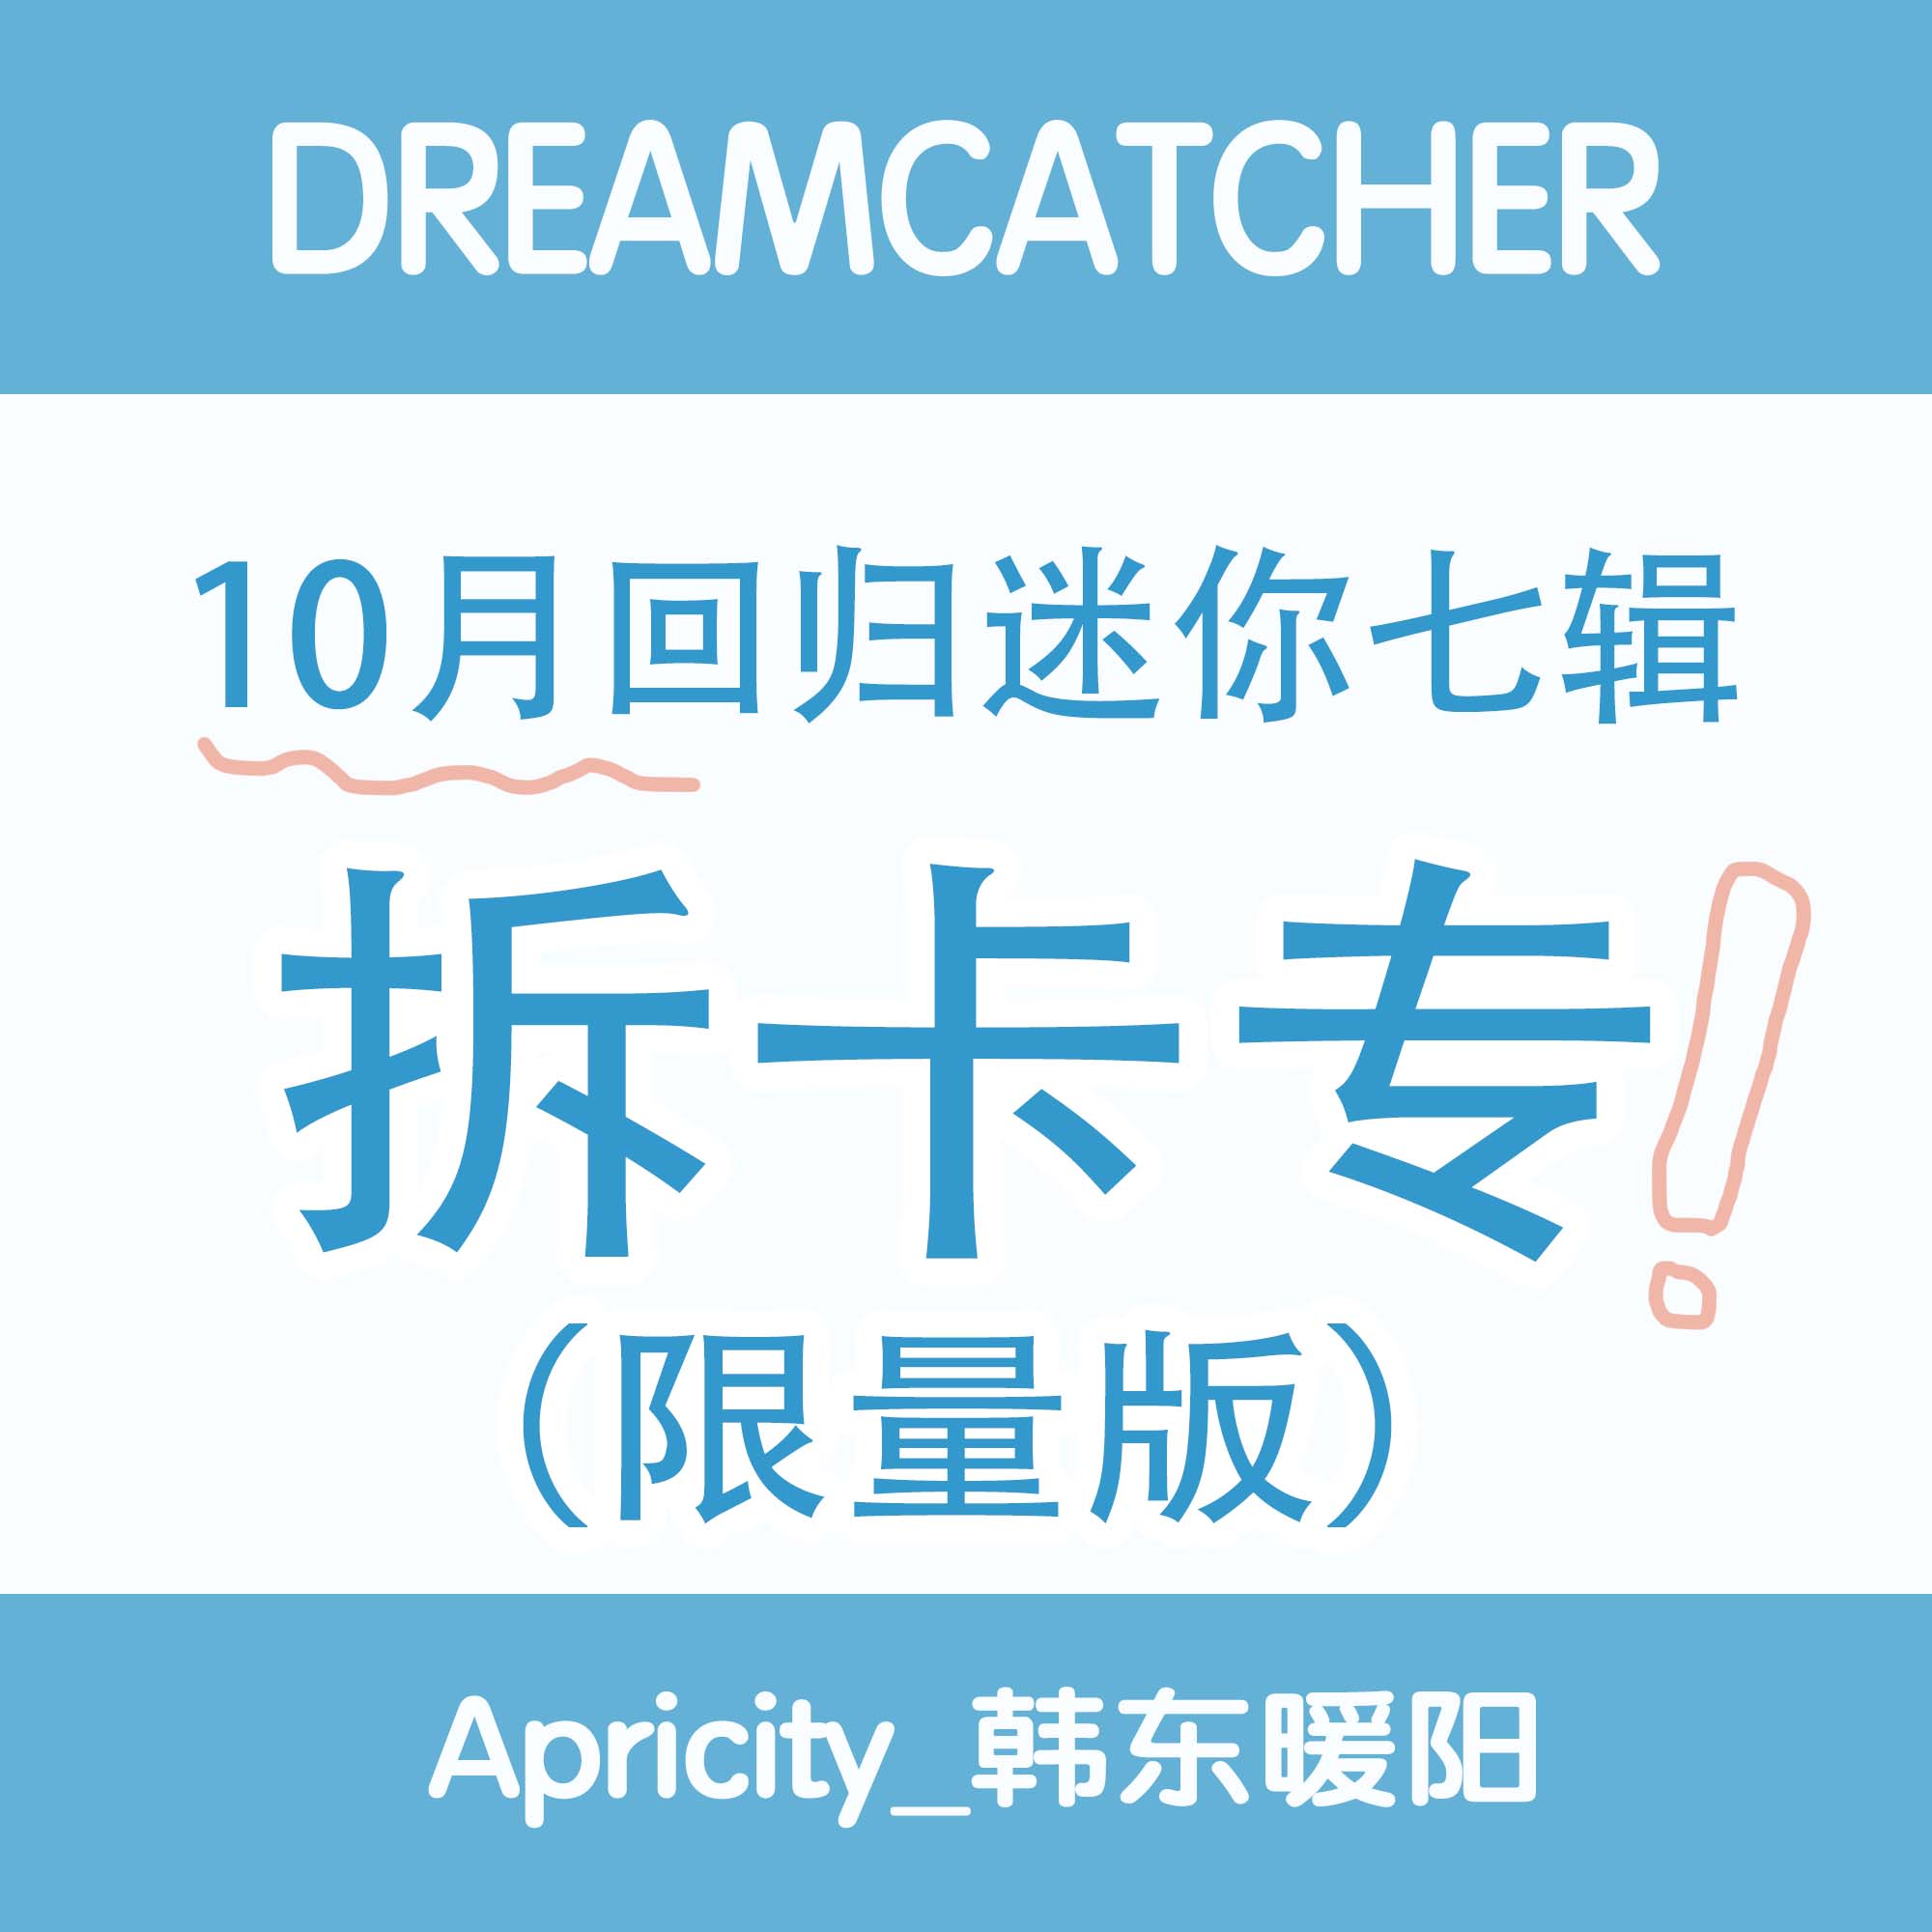 [拆卡专 限量版] Dreamcatcher 十月回归拆卡专_Apricity_韩东暖阳站